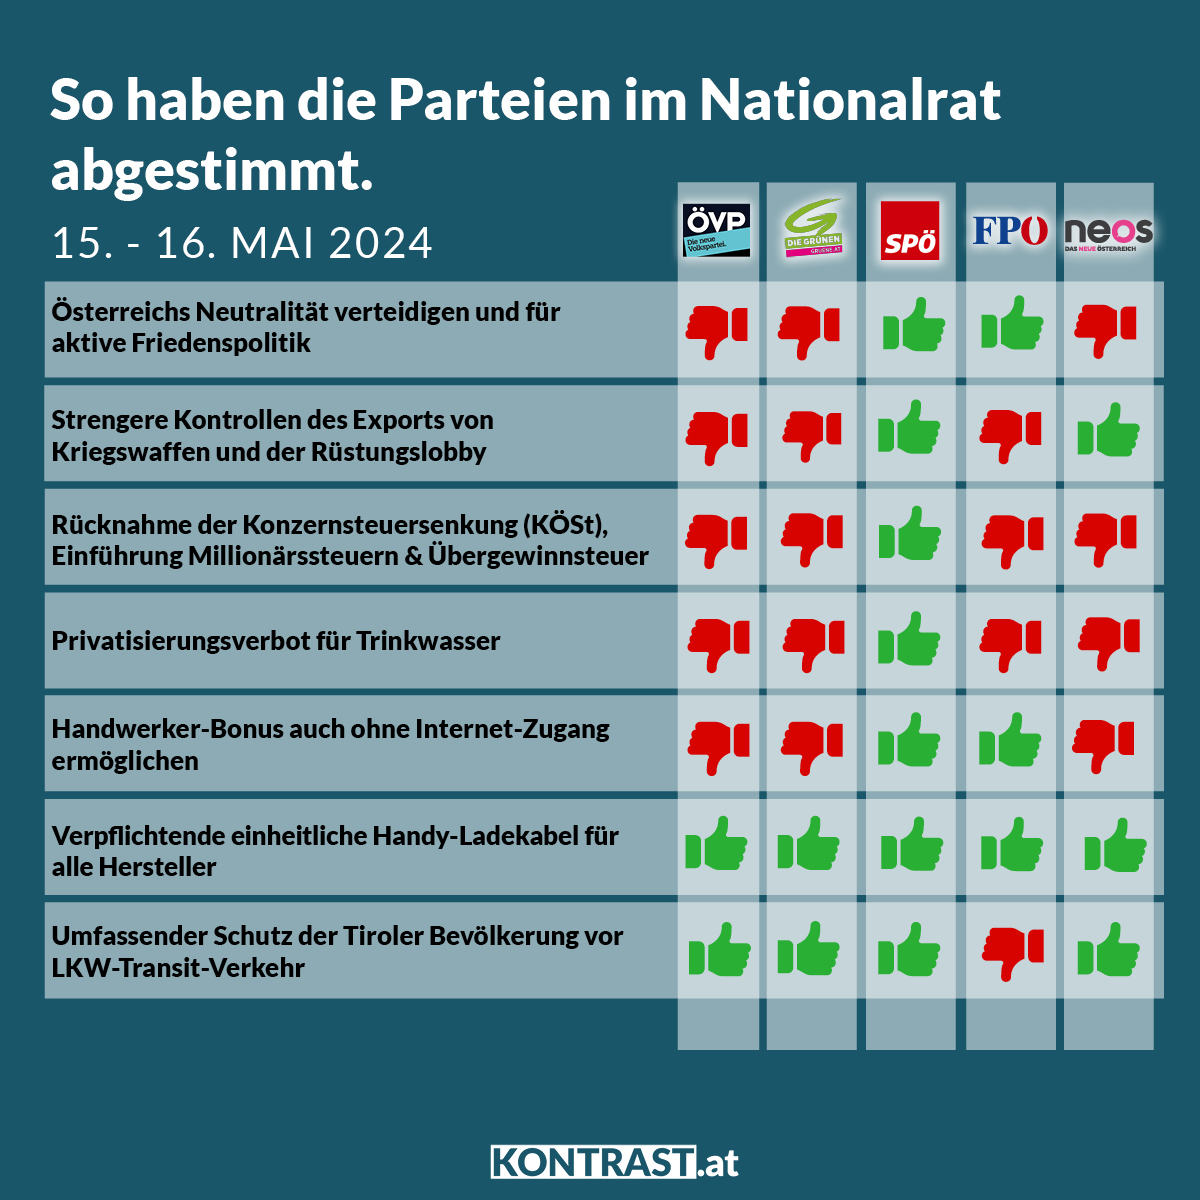 Nationalratssitzung vom 15. bis 16. Mai 2024: So haben die Parteien abgestimmt!